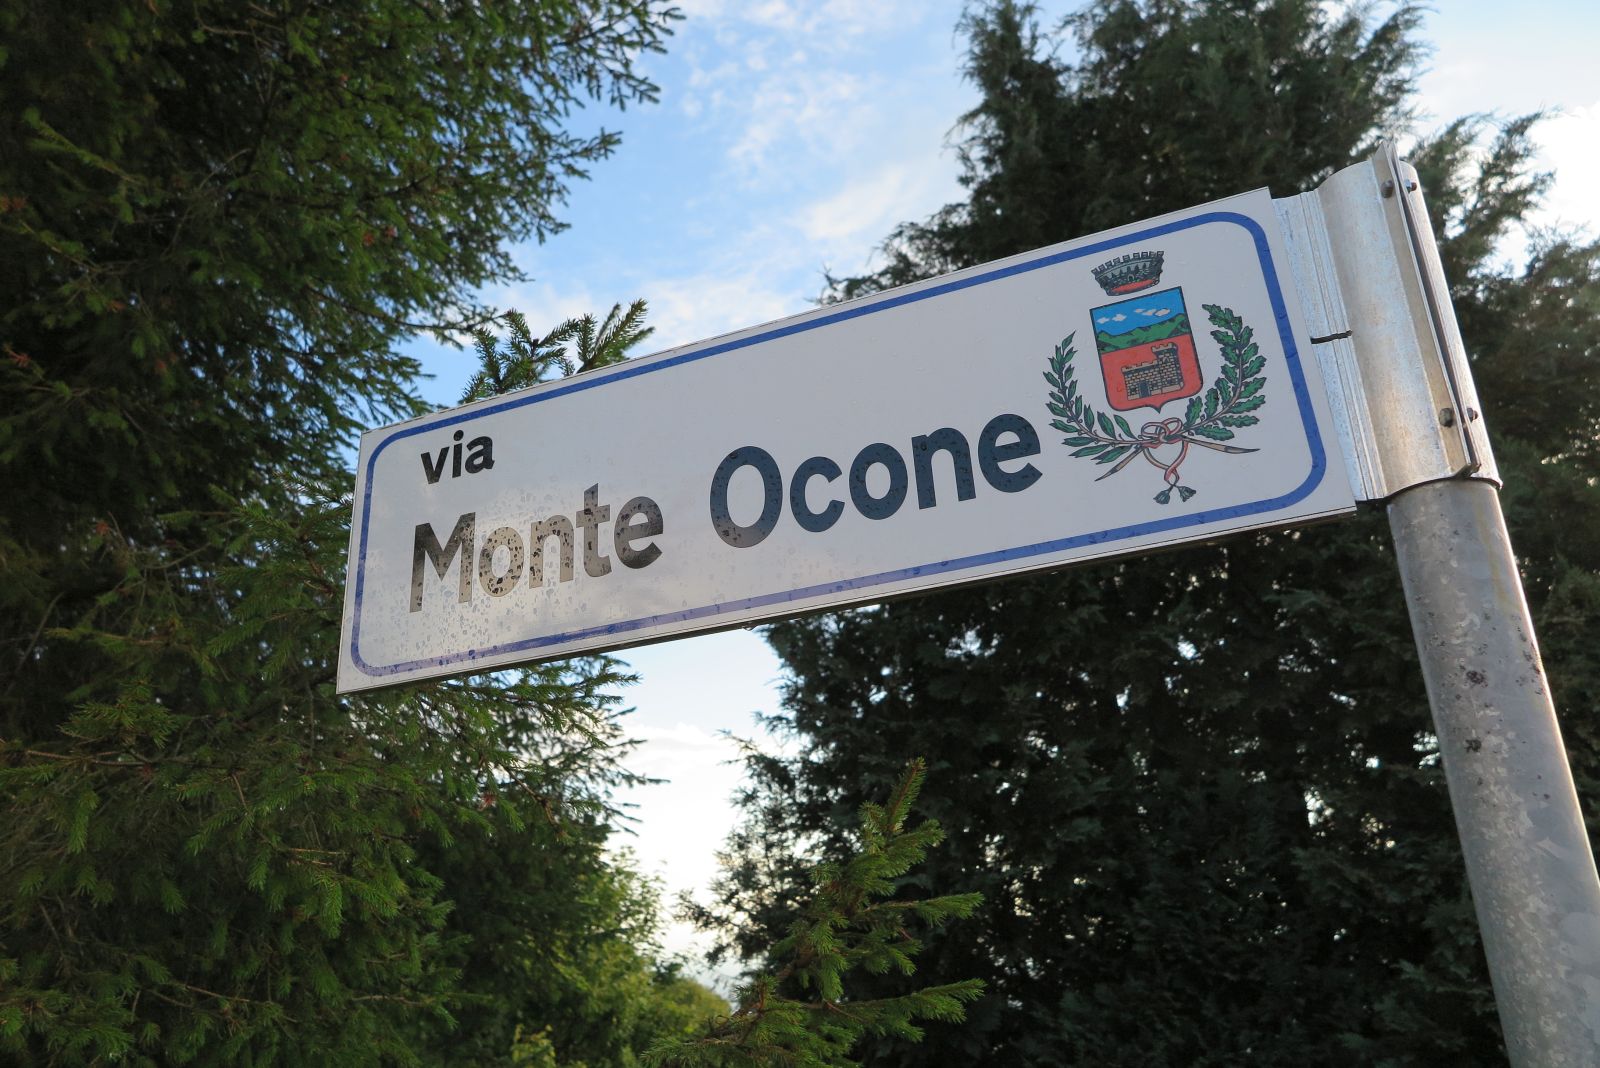 Via Monte Ocone